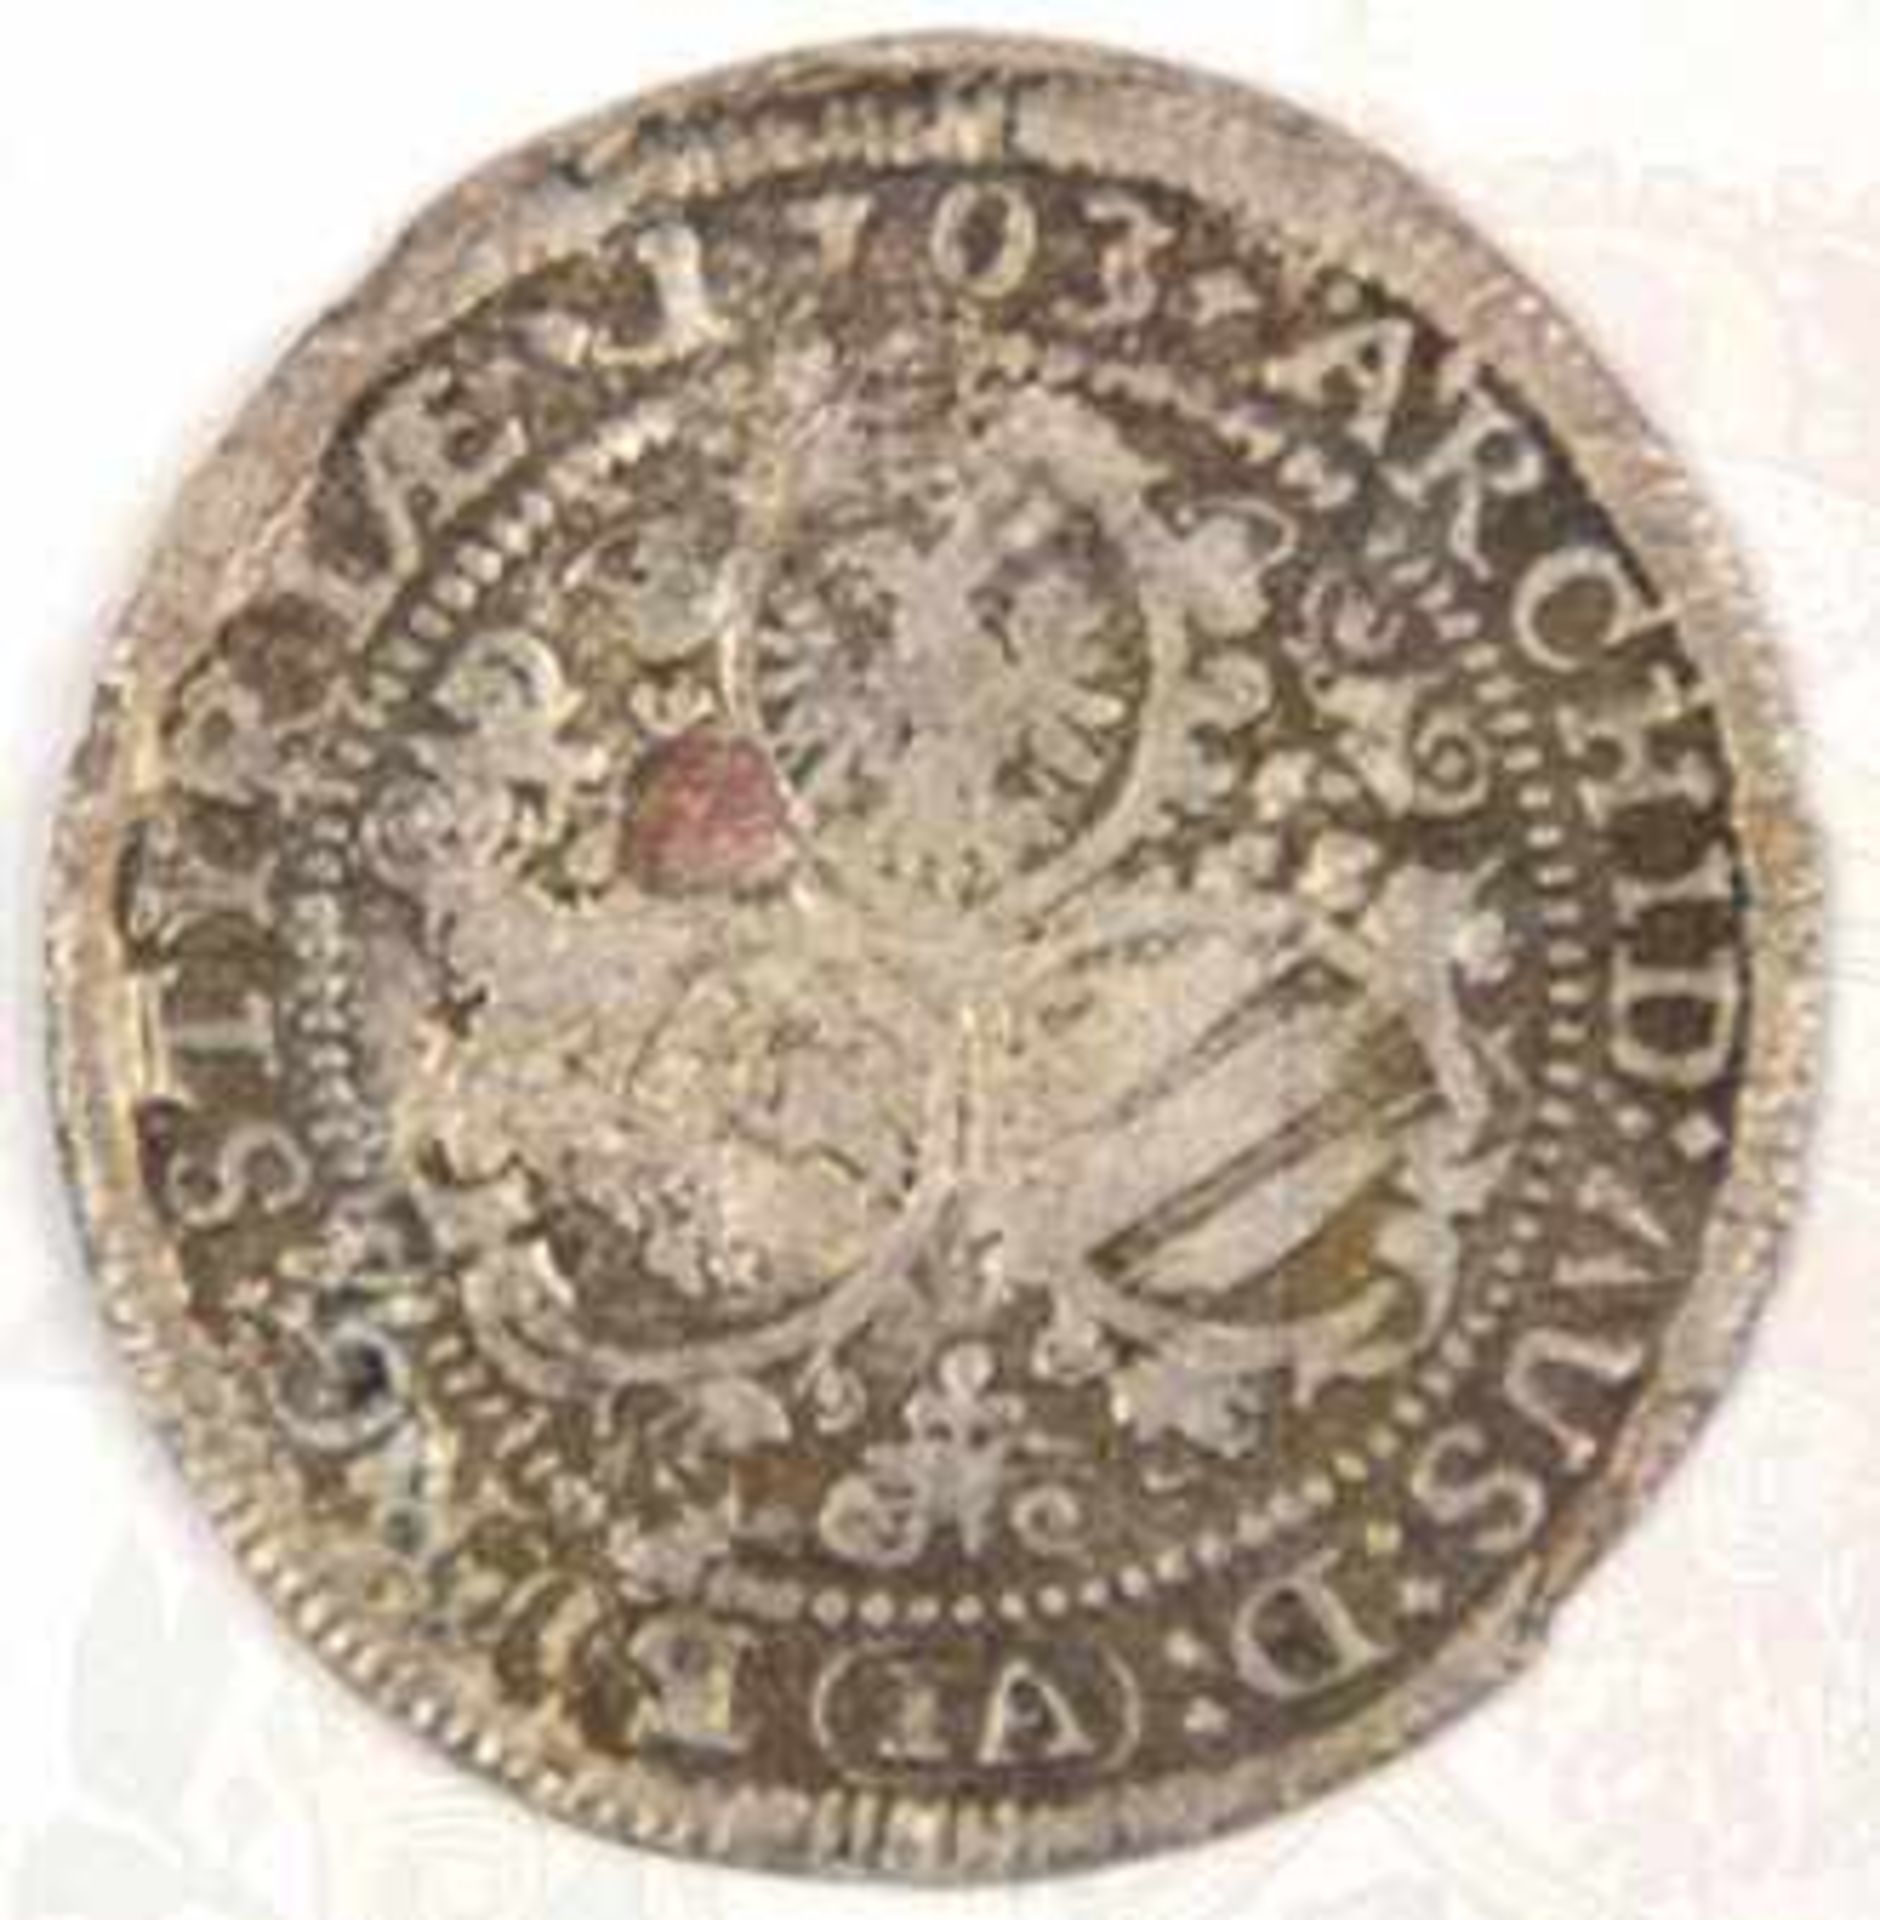 3 KREUZER 1703, Leopold I., Silber, Münzzeichen IA, m. Portrait u. Wappen - Bild 2 aus 2